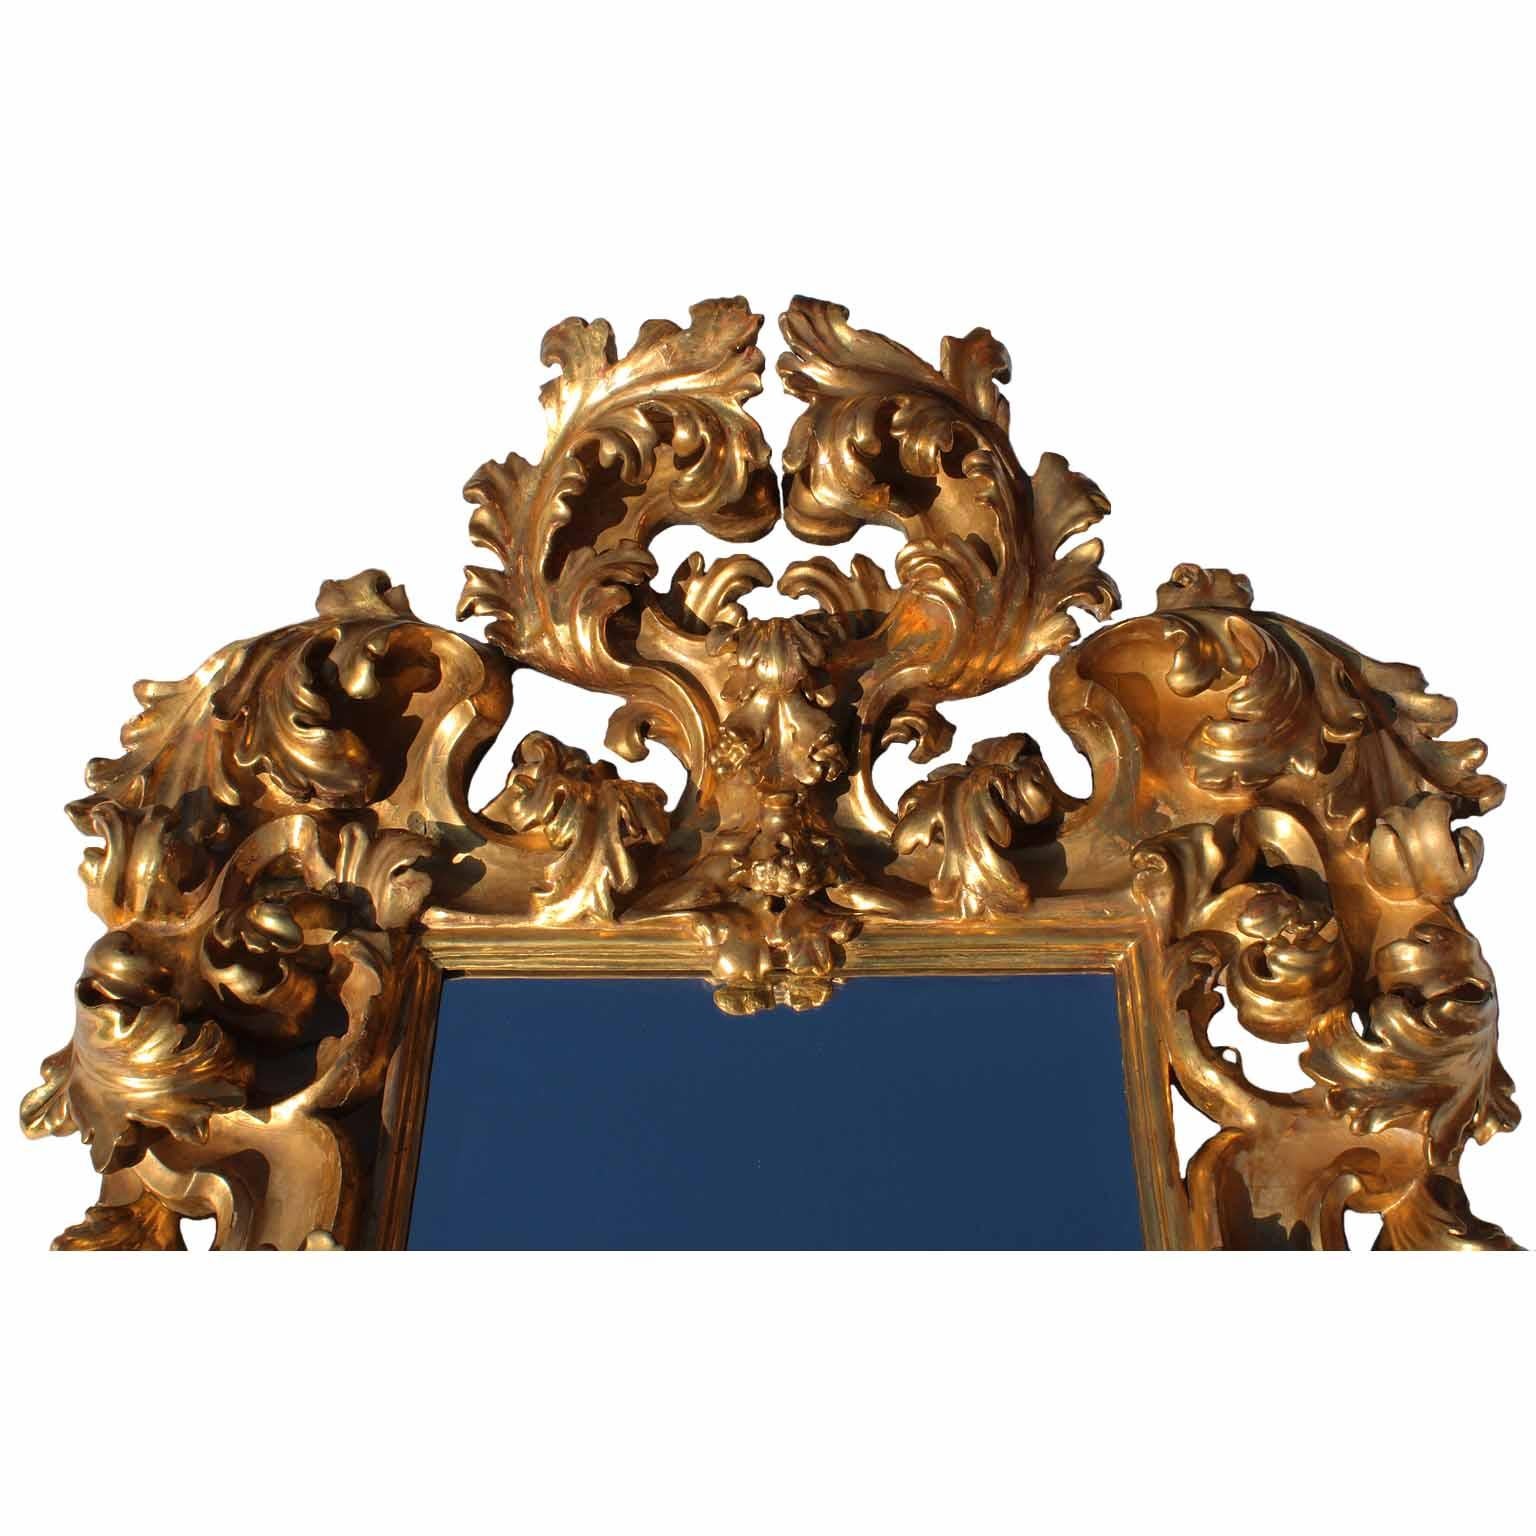 Un cadre de miroir sculpté en bois doré florentin rococo italien du XIXe siècle, de qualité palatiale et muséale. Le cadre sculpté de rinceaux et d'acanthes, entièrement doré, est d'origine, vers Florence, 1870-1880.

Mesures : Hauteur : 68 1/2